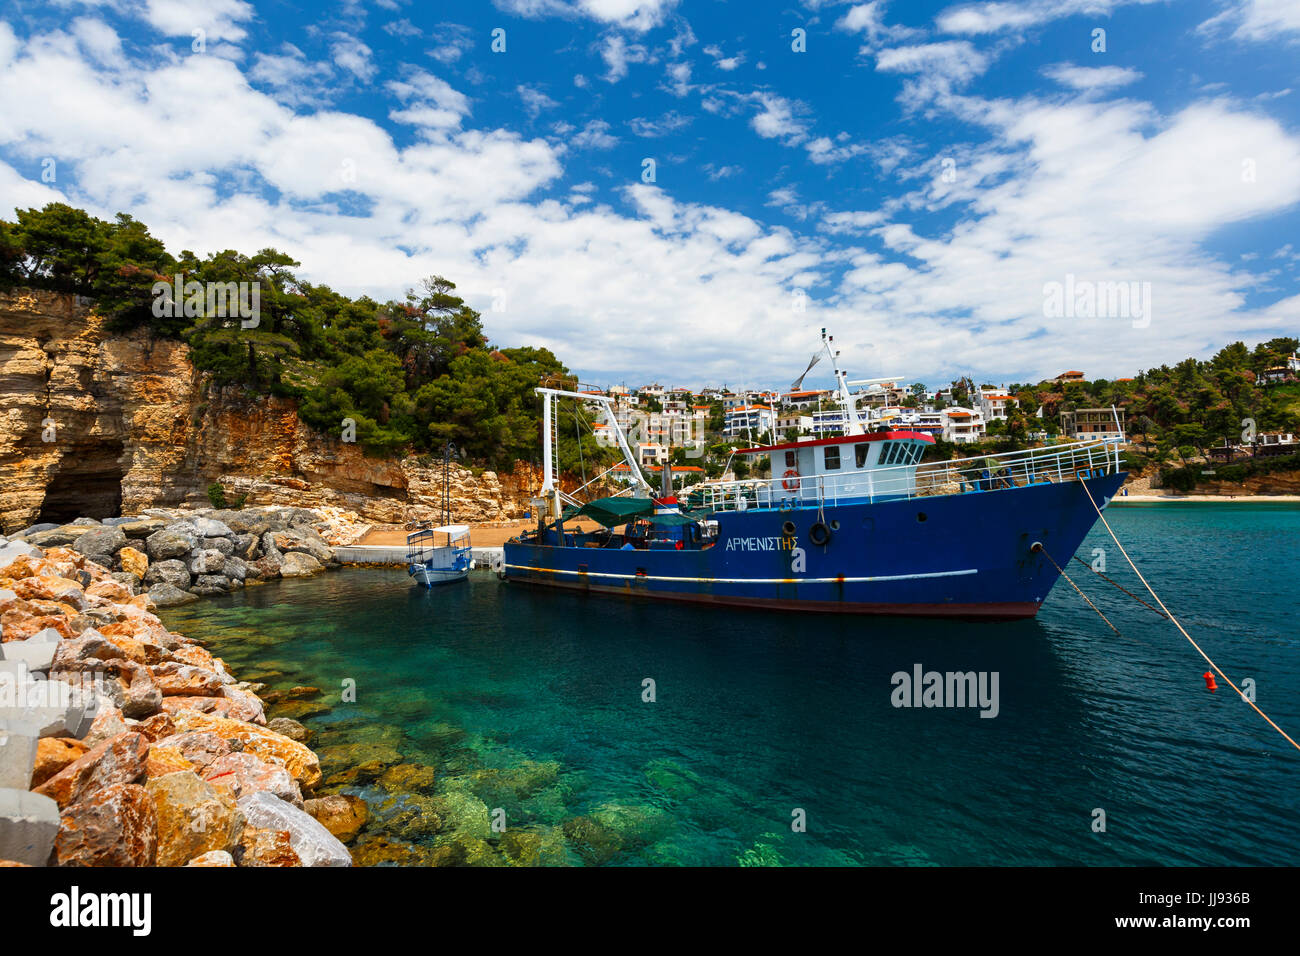 Porto di Patitiri villaggio sull isola di Alonissos in Grecia. Foto Stock